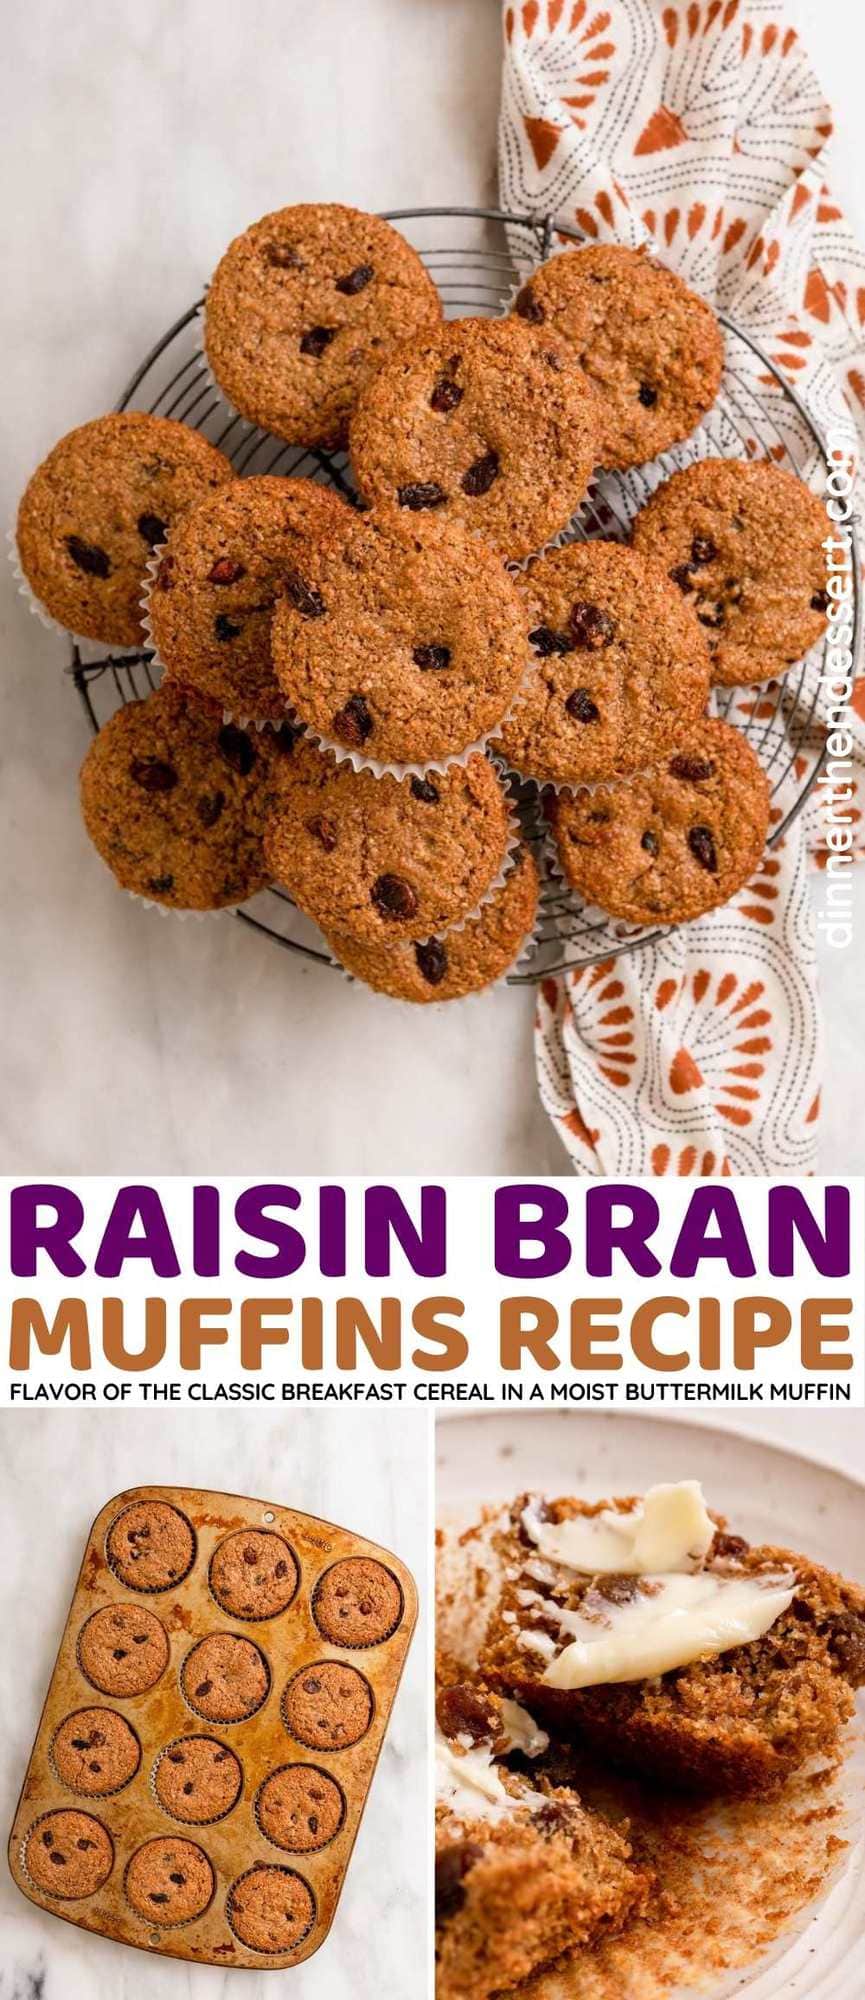 Raisin Bran Muffins collage